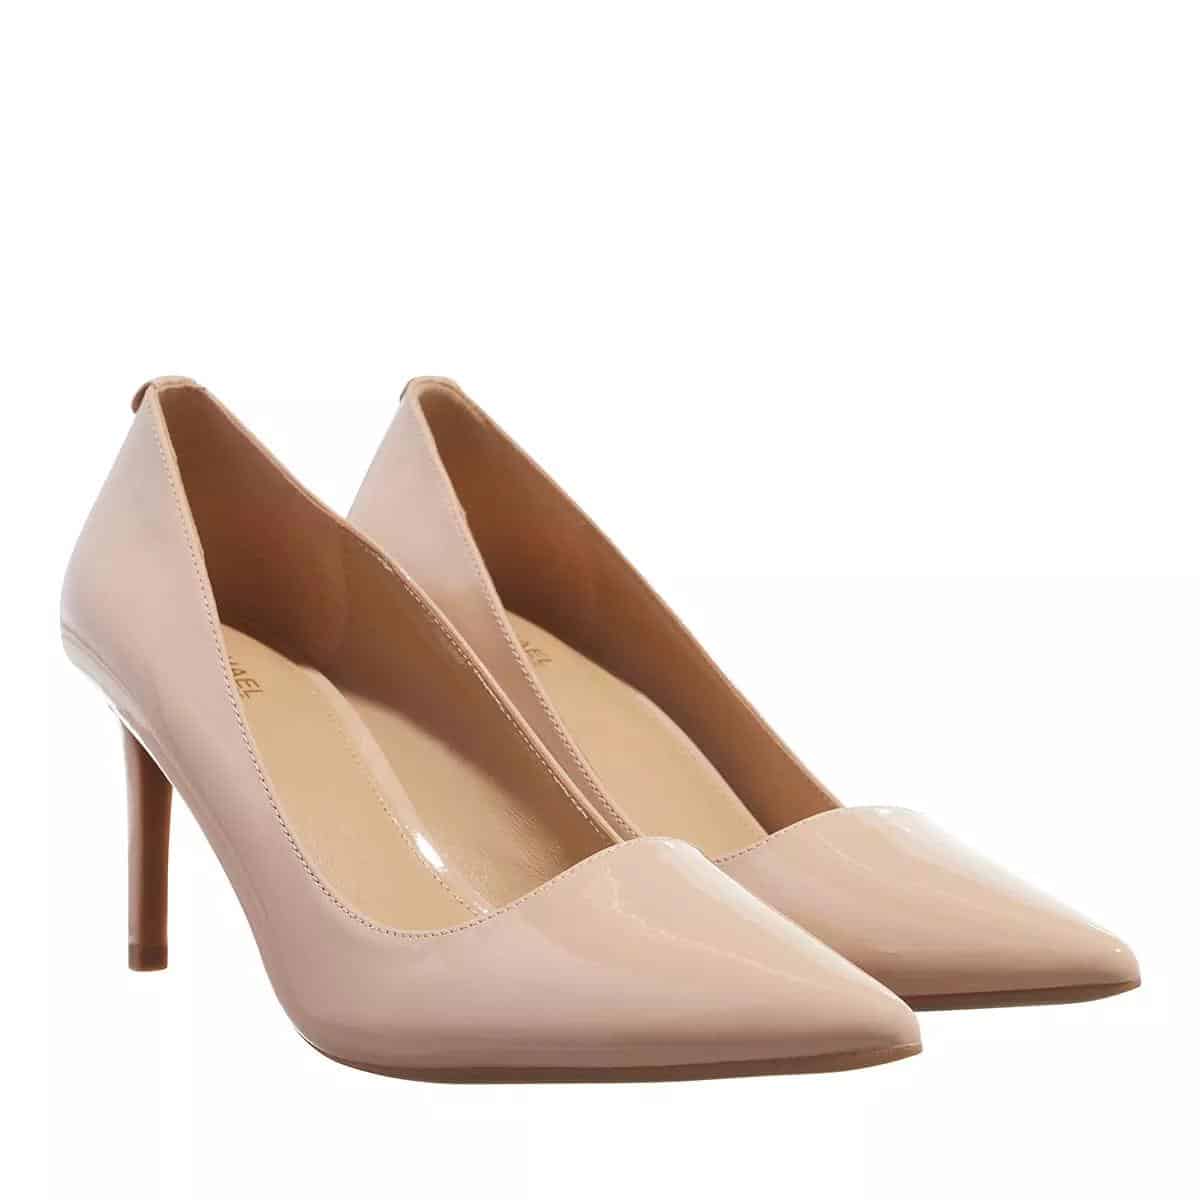 Michael Kors Pumps & high heels - Alina Flex Pump in beige